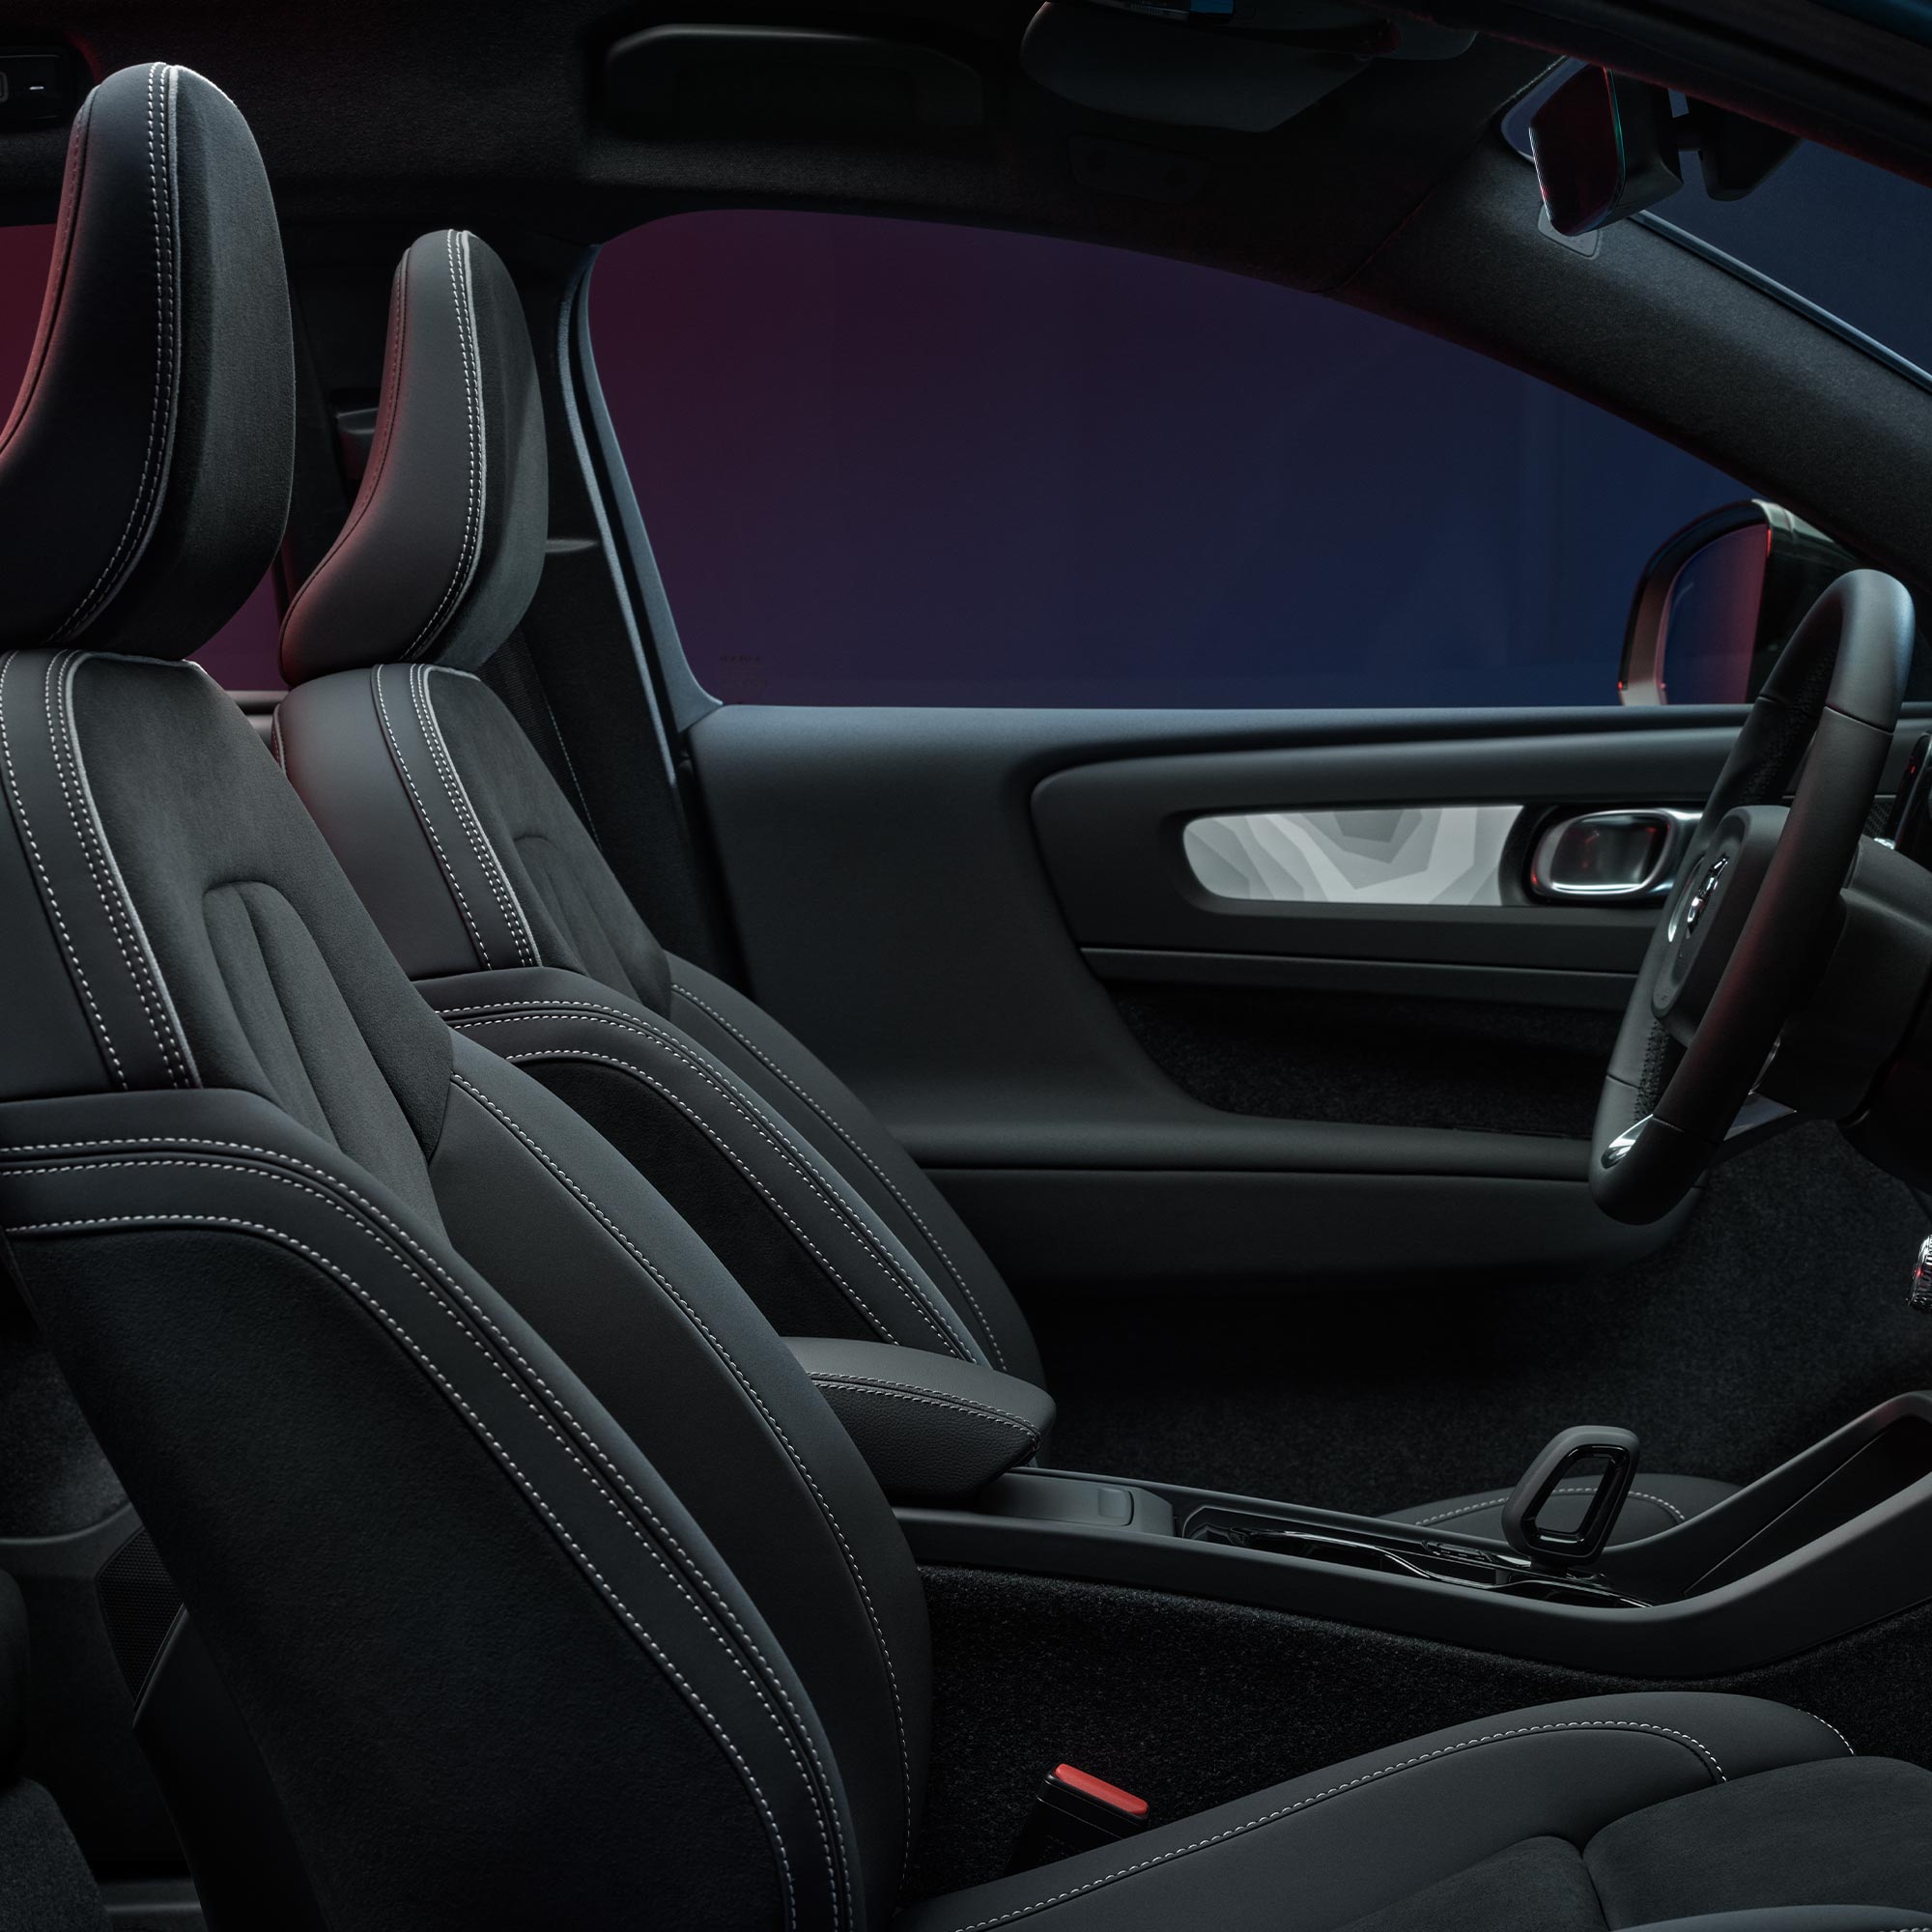 Απεικόνιση των εμπρός καθισμάτων και του τιμονιού στο εσωτερικό ενός Volvo C40 Recharge.